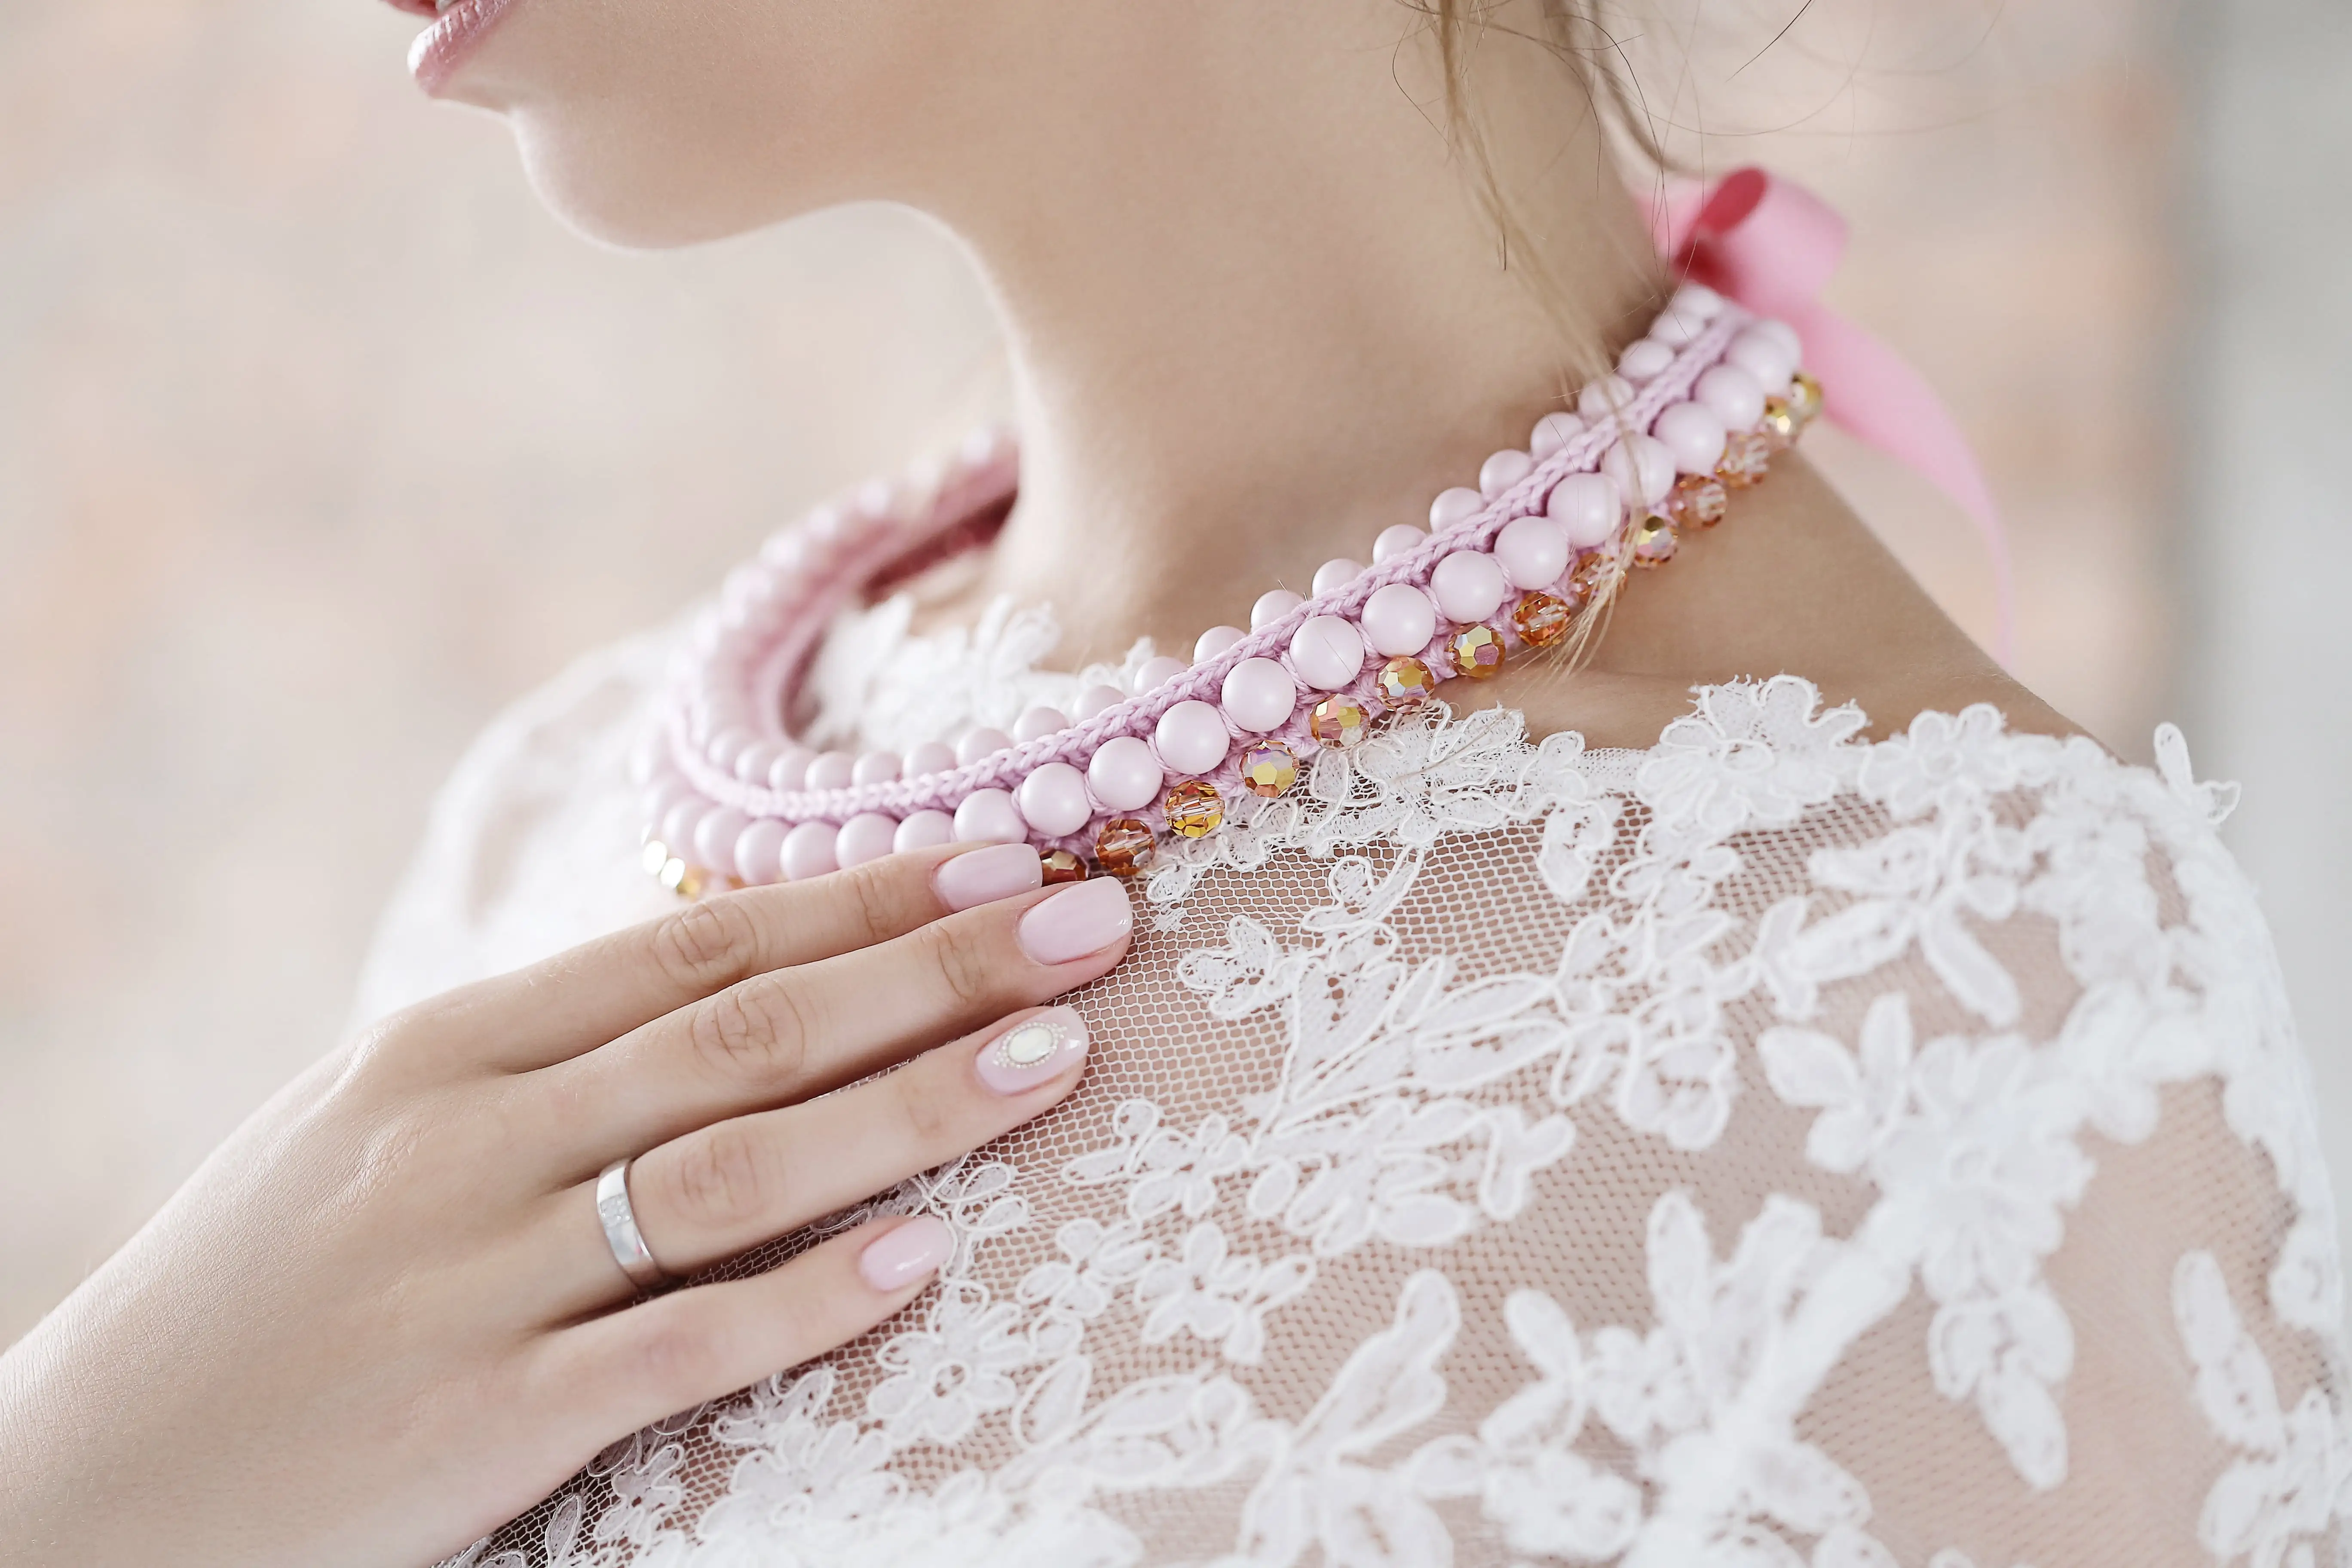 Růžový perlový náhrdelník na krku ženy v bílých šatech